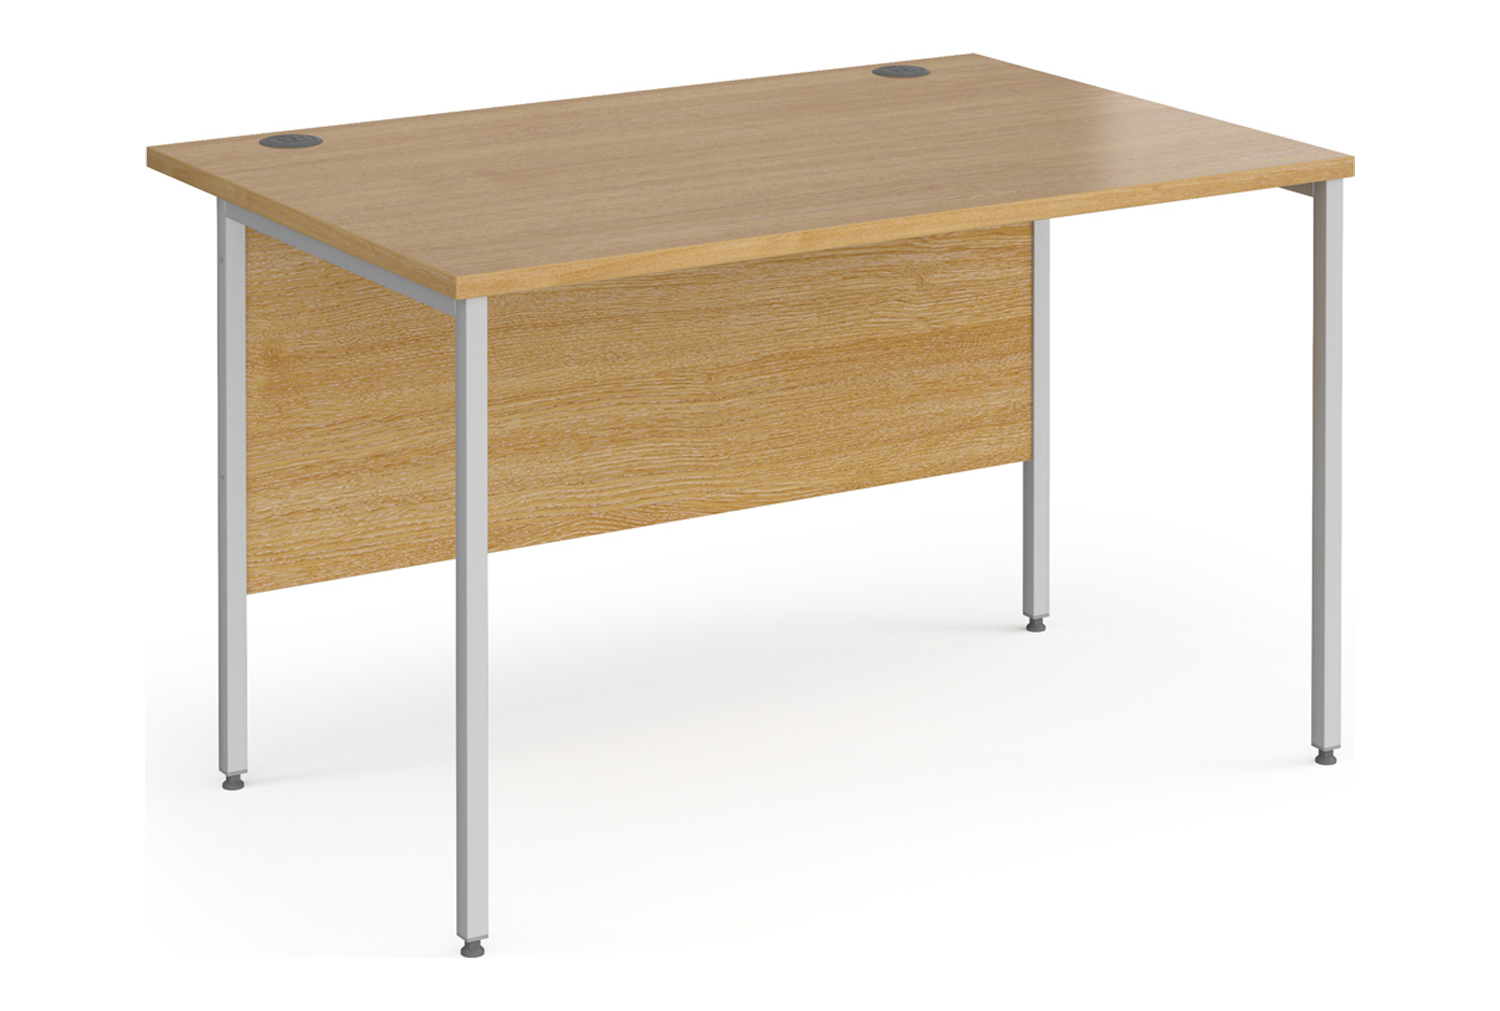 Value Line Classic+ Rectangular H-Leg Office Desk (Silver Leg), 120wx80dx73h (cm), Oak